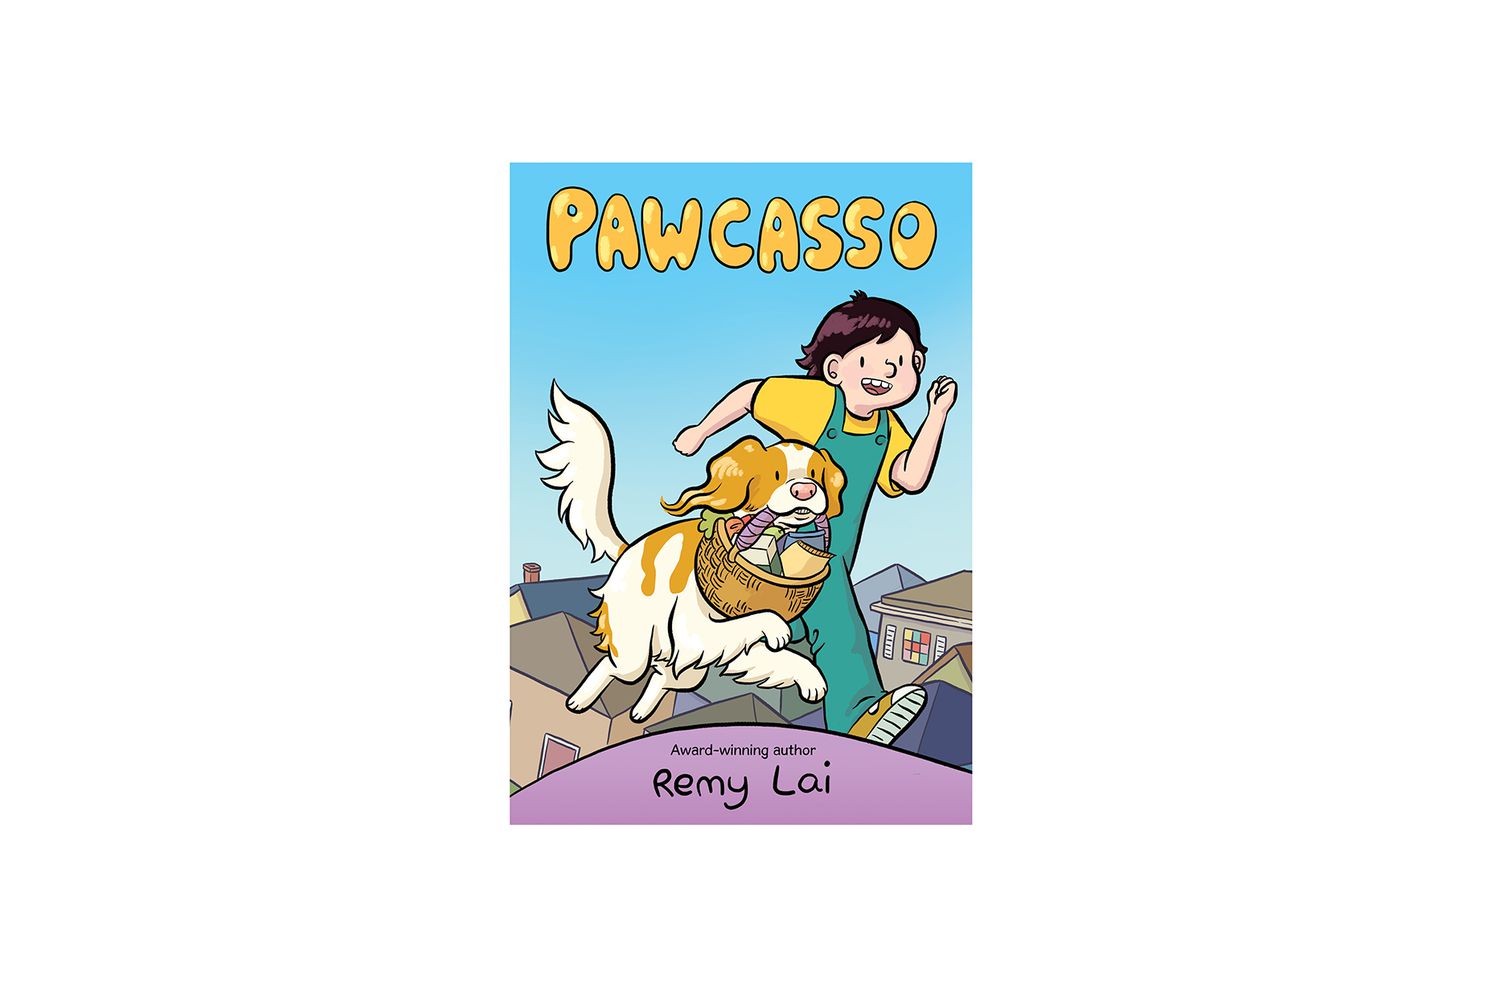 Pawcasso book